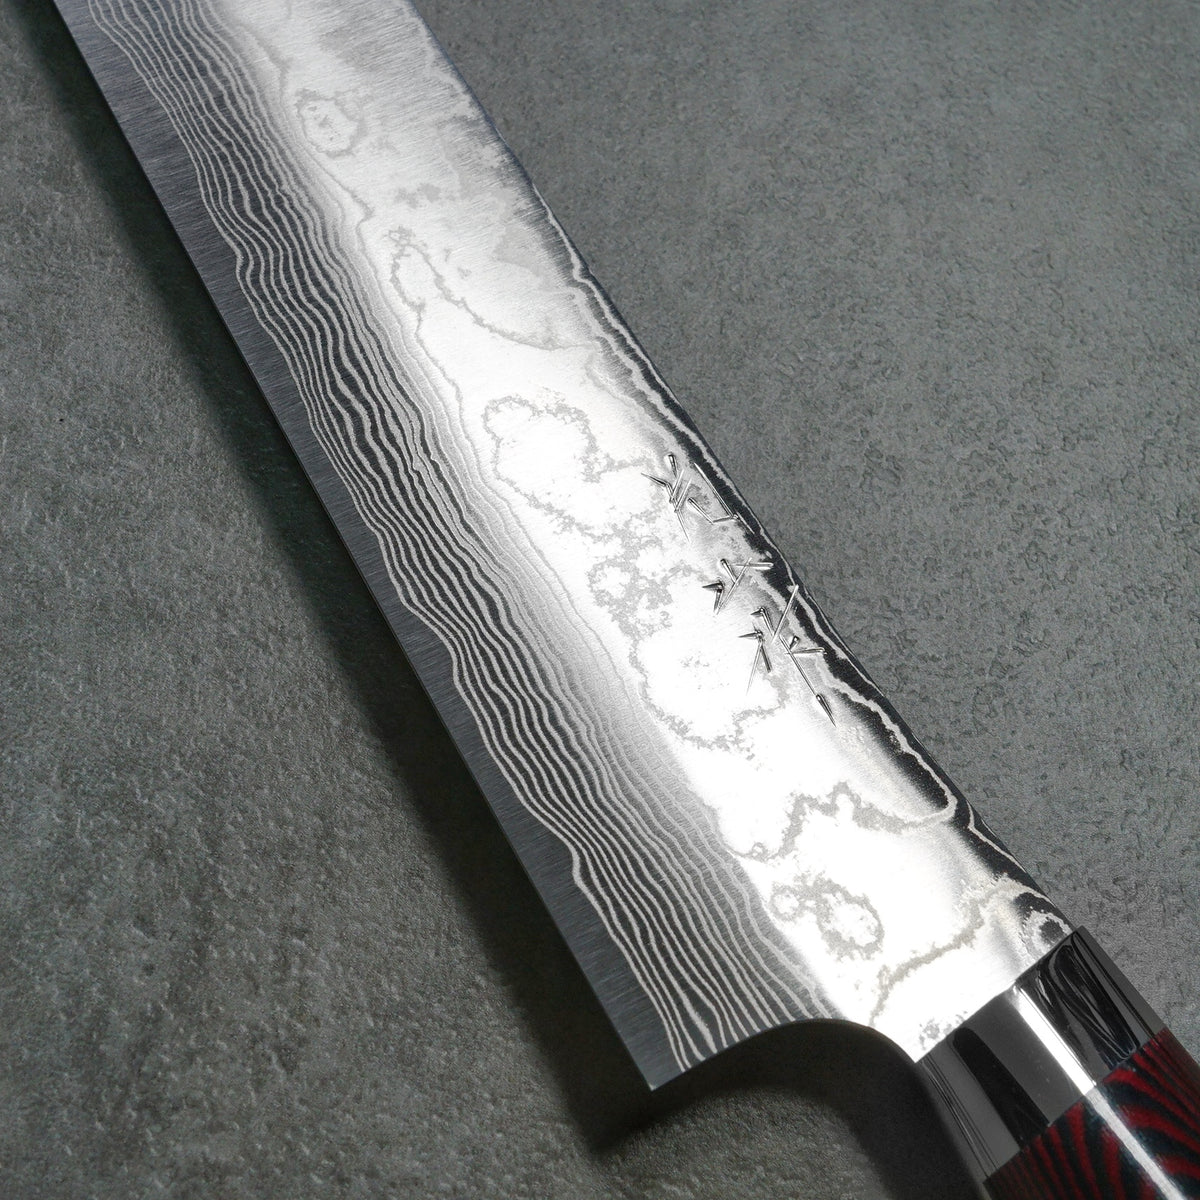 Get High-Quality Damascus Nakiri Knife – Yakushi Knives